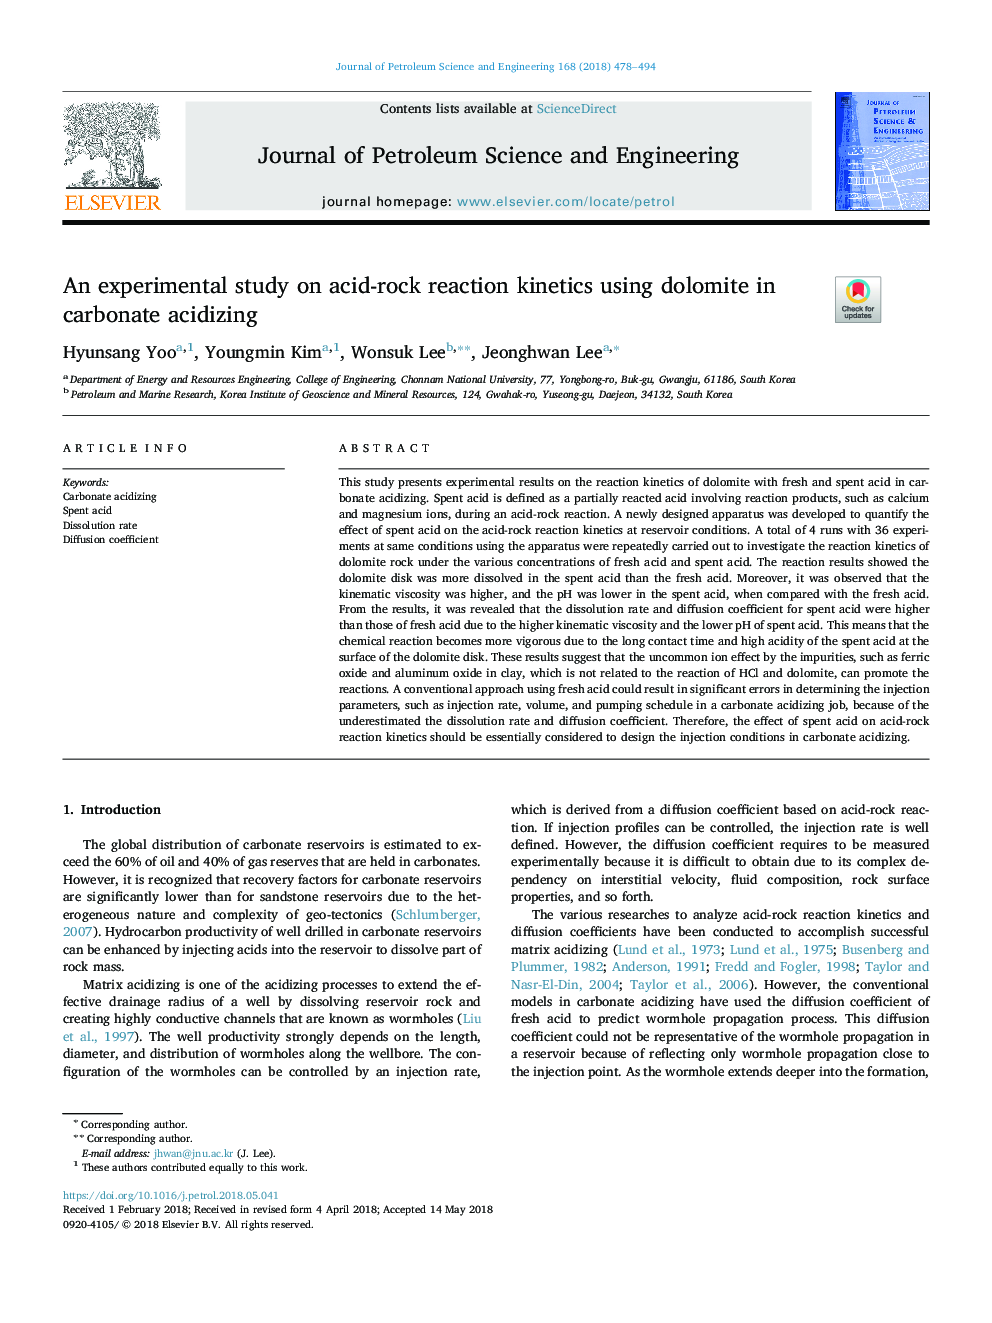 یک مطالعه تجربی بر روی سینتیک واکنش اسید-راک با استفاده از دولومیت در اسید کربنات 